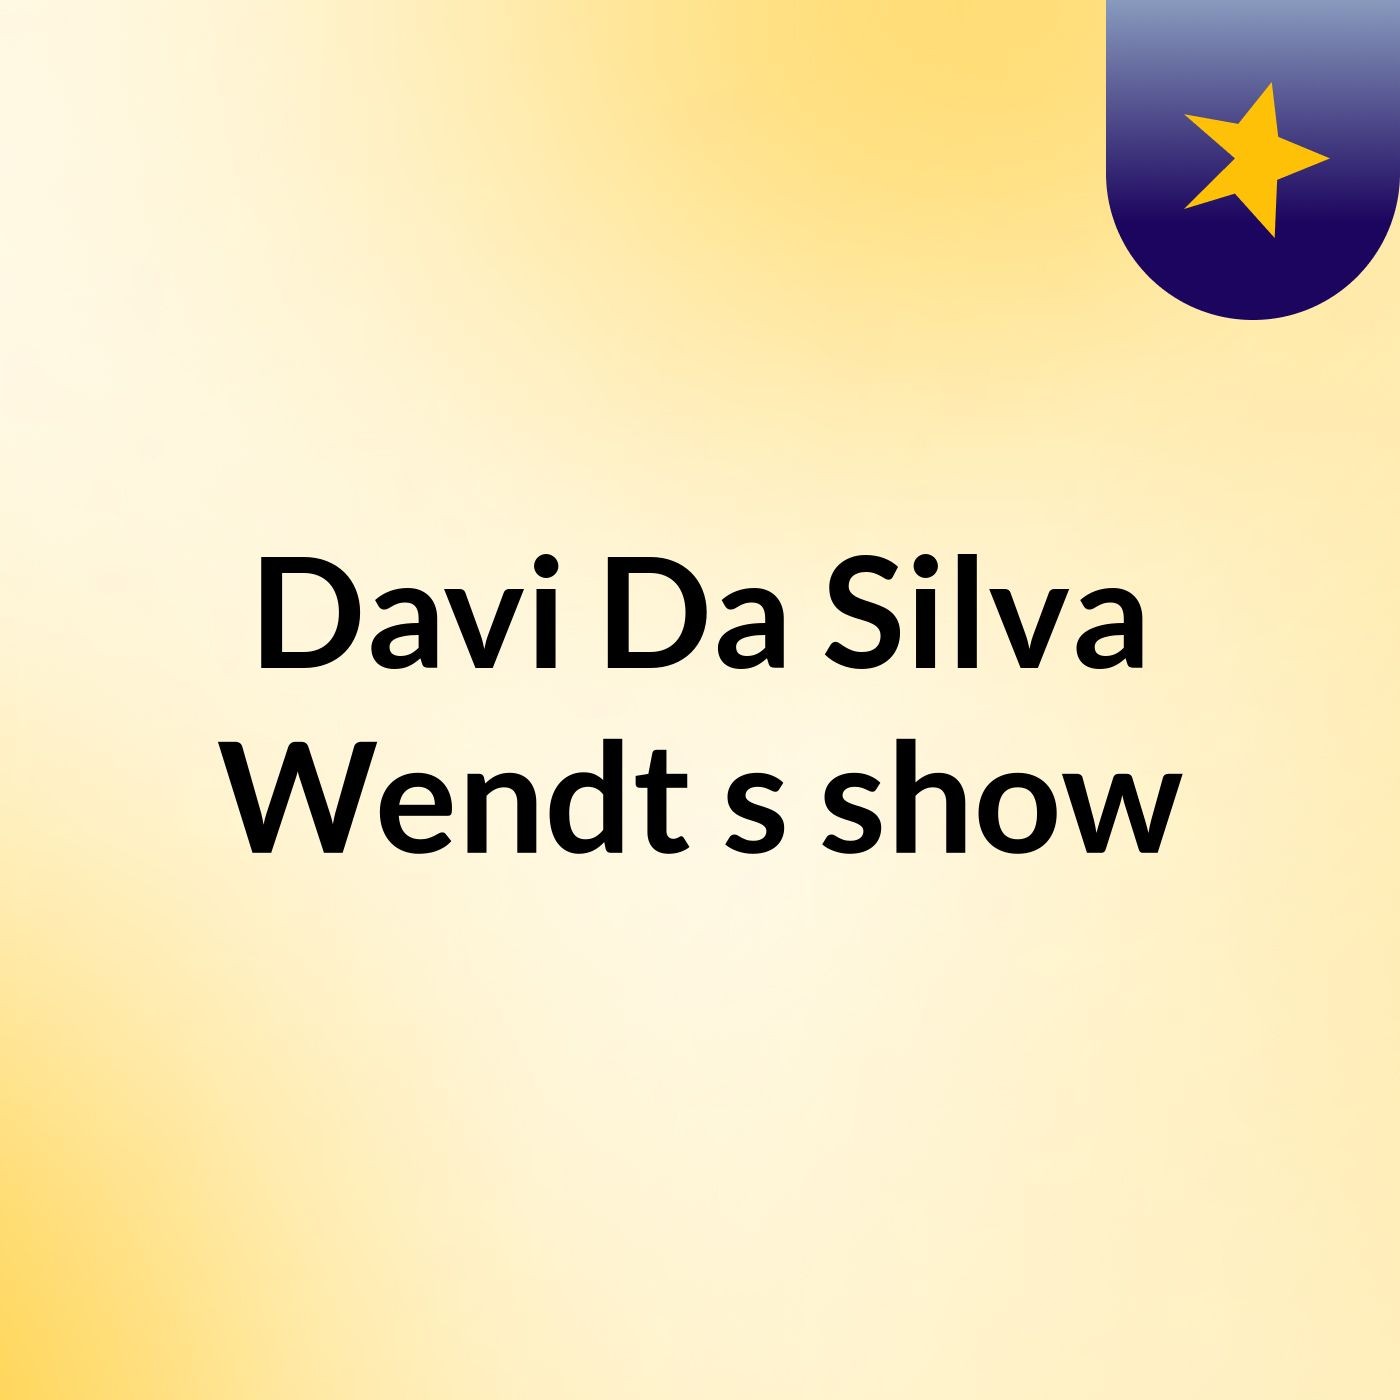 Davi Da Silva Wendt's show